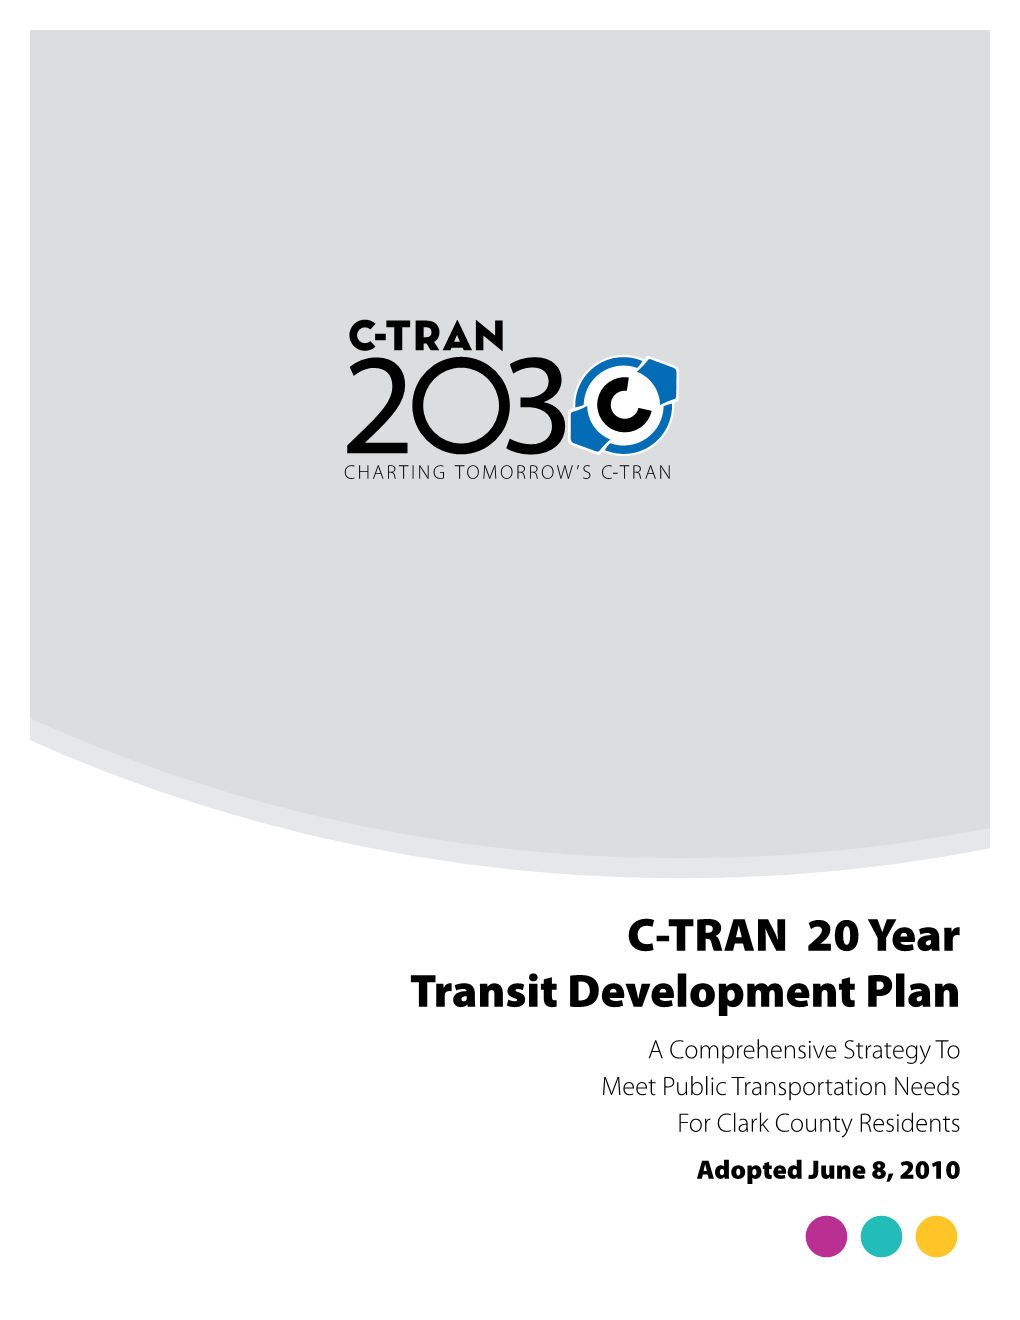 C-TRAN 20 Year Transit Development Plan